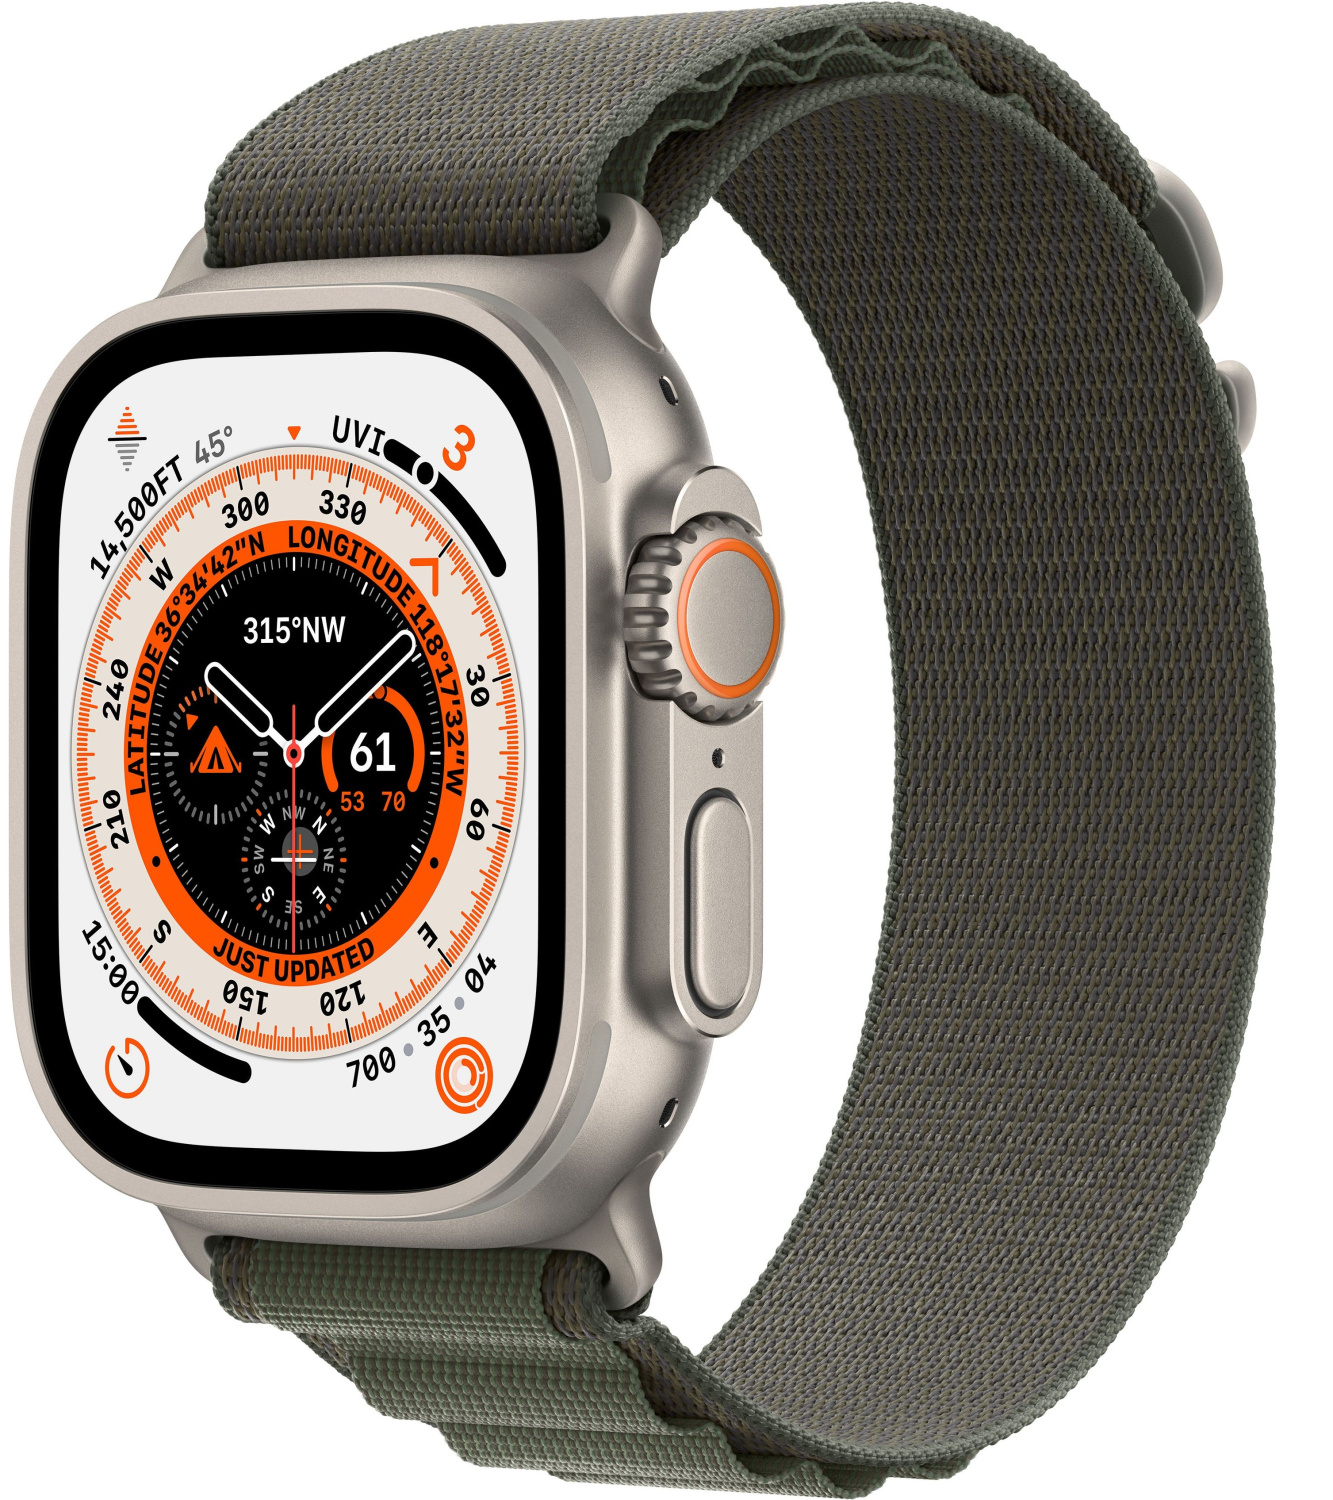 Купить apple watch ultra gps + cellular, 49 мм, корпус из титана, ремешок alpine зеленого цвета Apple Watch Ultra в официальном магазине Apple, Samsung, Xiaomi. iPixel.ru Купить, заказ, кредит, рассрочка, отзывы,  характеристики, цена,  фотографии, в подарок.